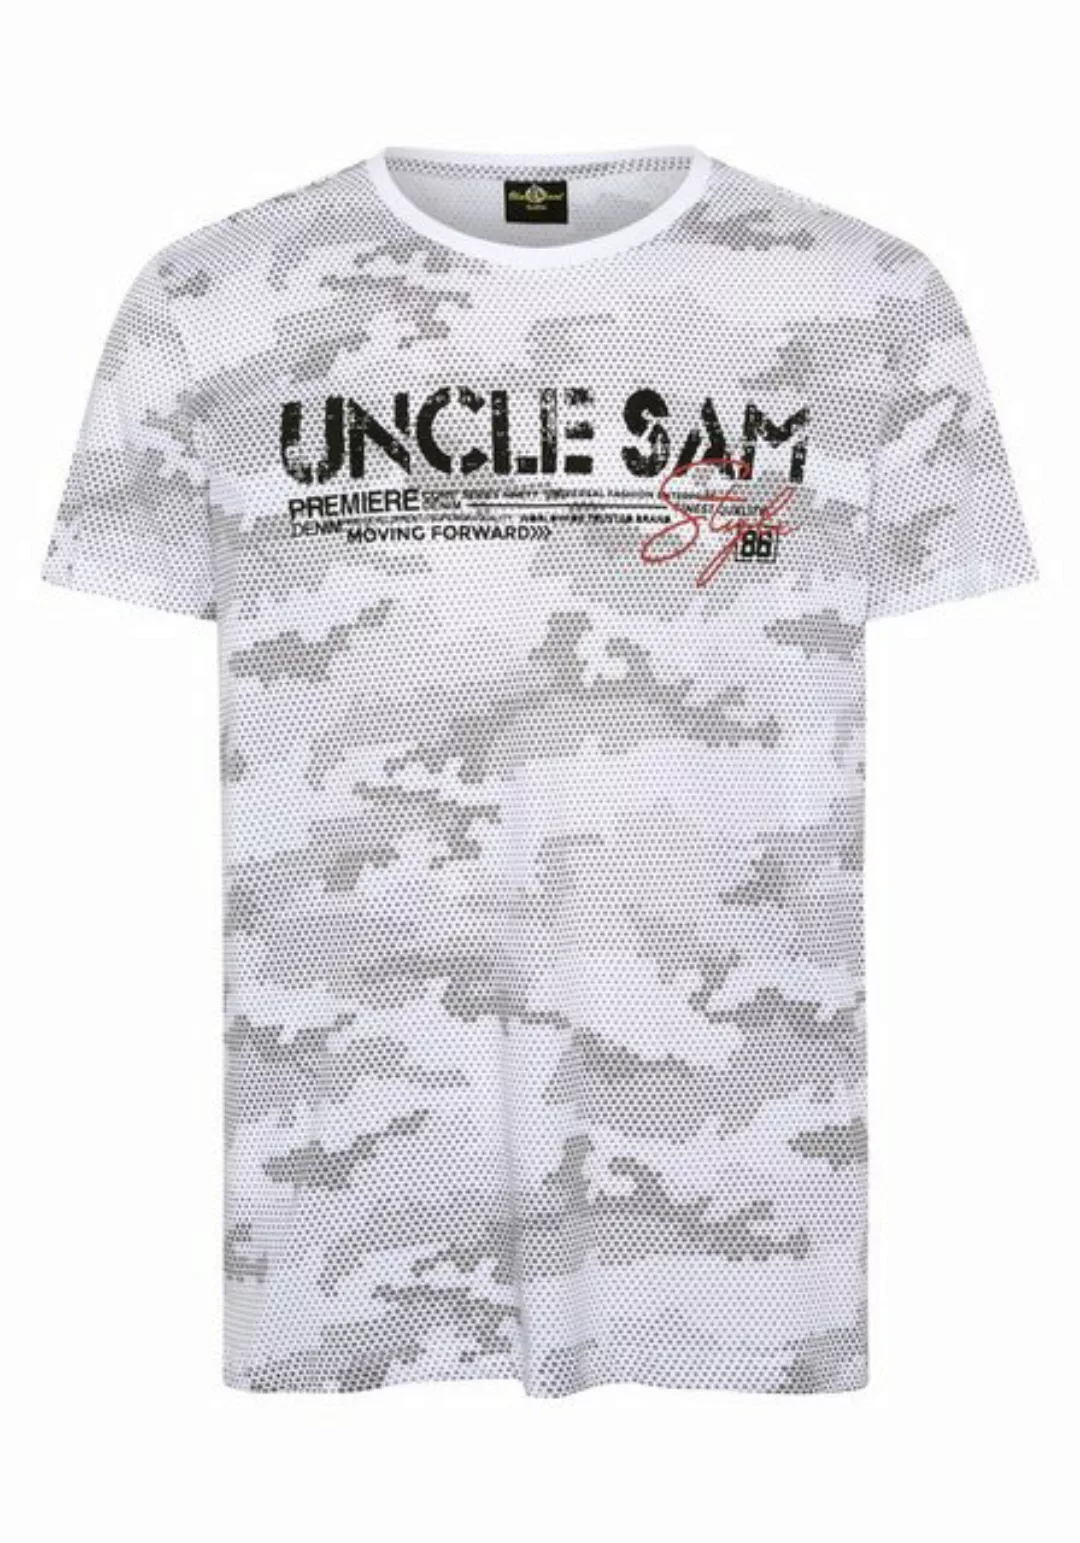 Uncle Sam Print-Shirt im Logo-Look günstig online kaufen